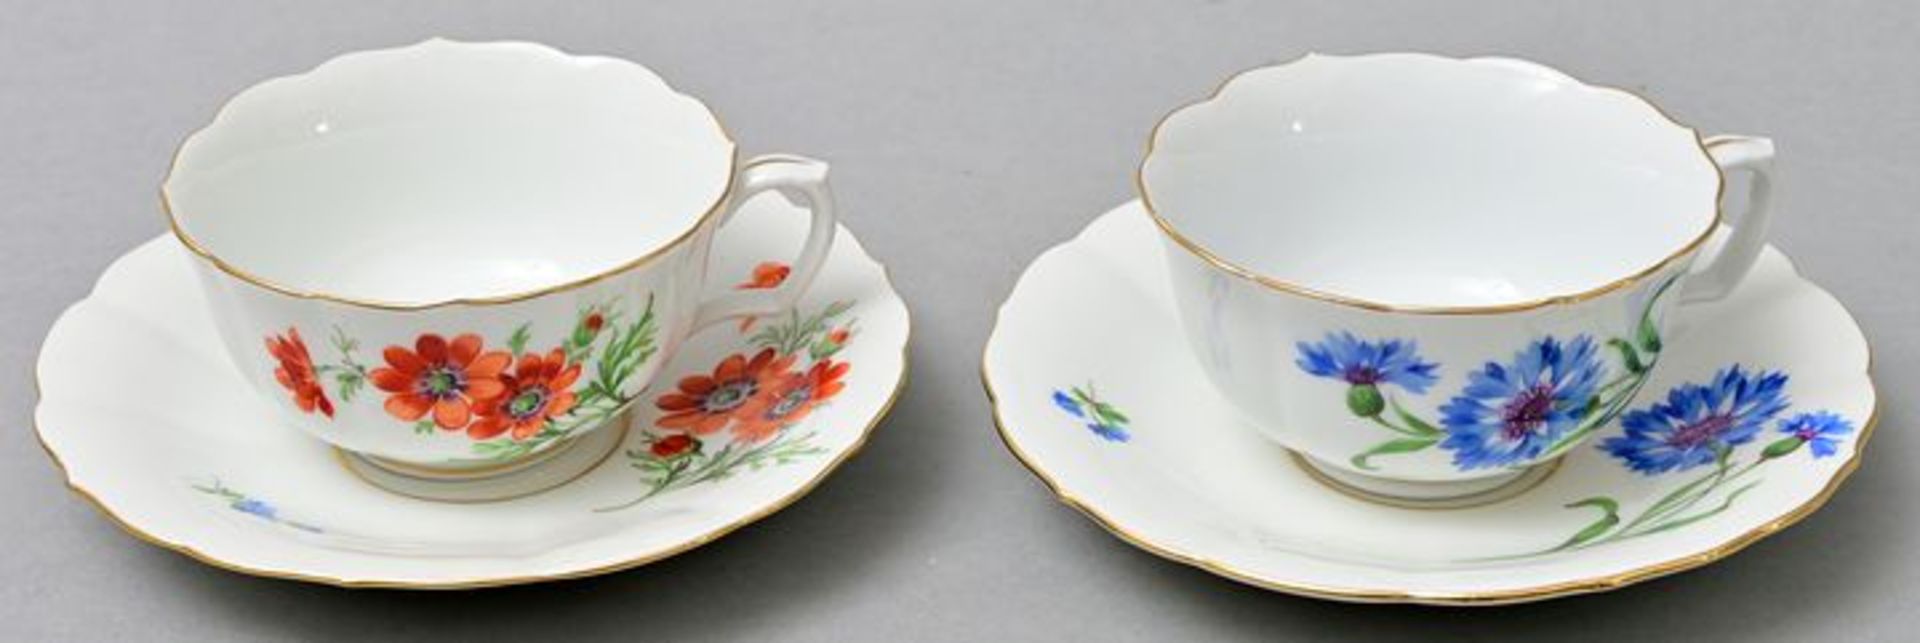 Zwei Tassen mit Untertassen/ cups with saucers